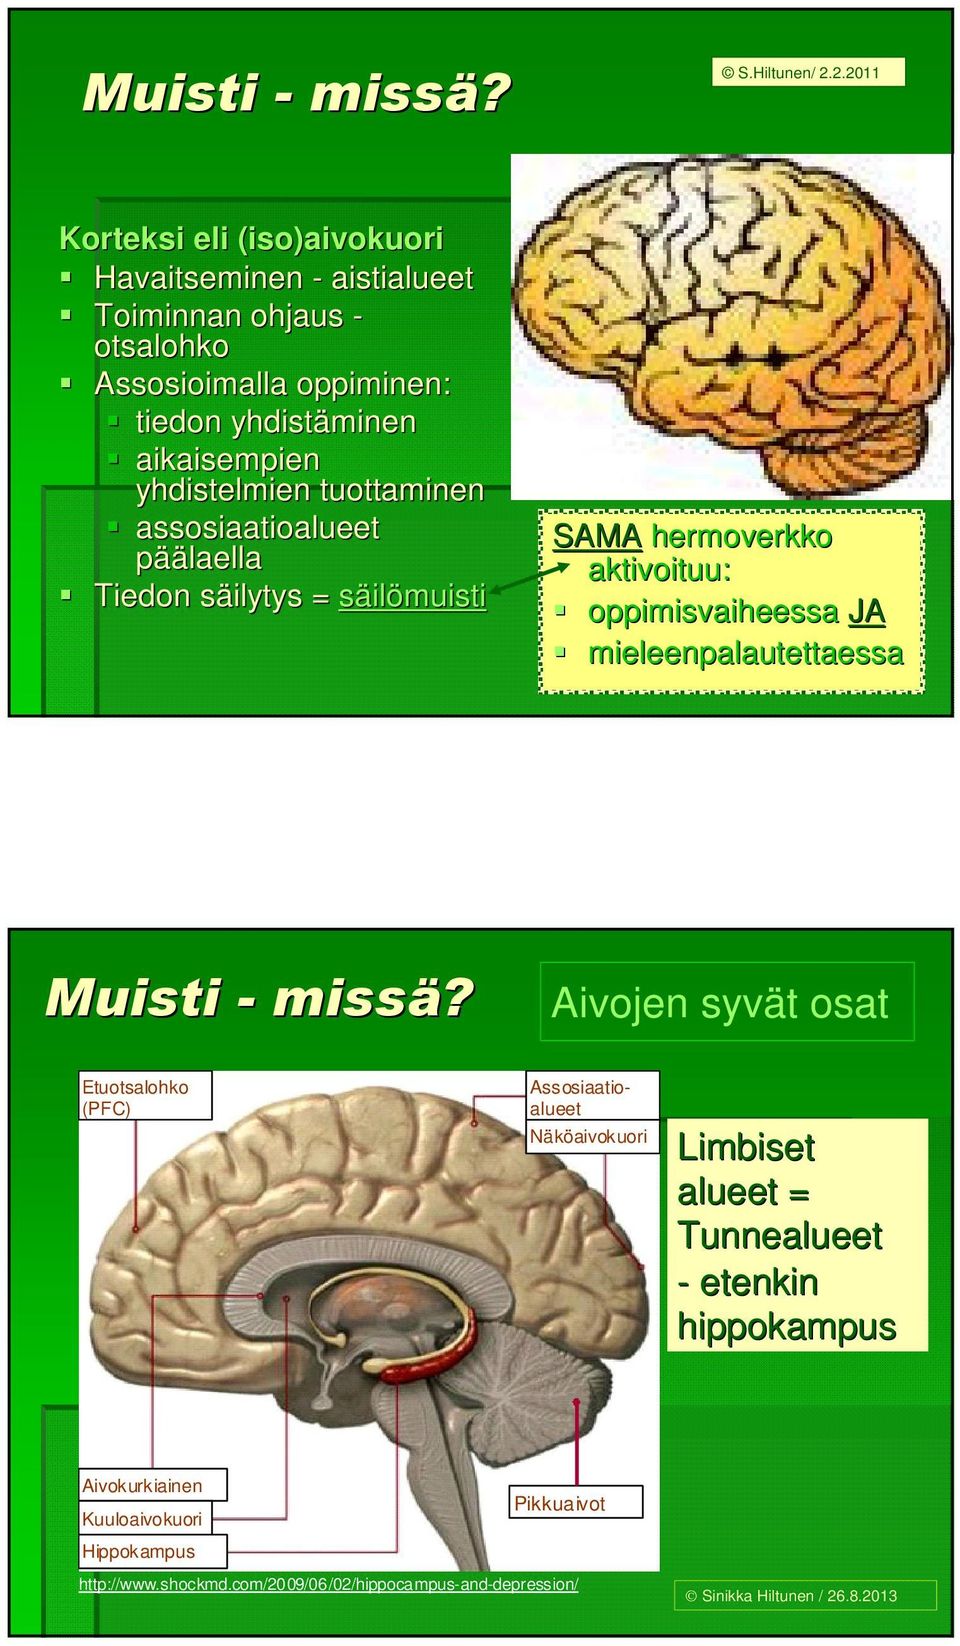 yhdistelmien tuottaminen assosiaatioalueet päälaella Tiedon säilytys s = säilömuisti SAMA hermoverkko aktivoituu: oppimisvaiheessa JA